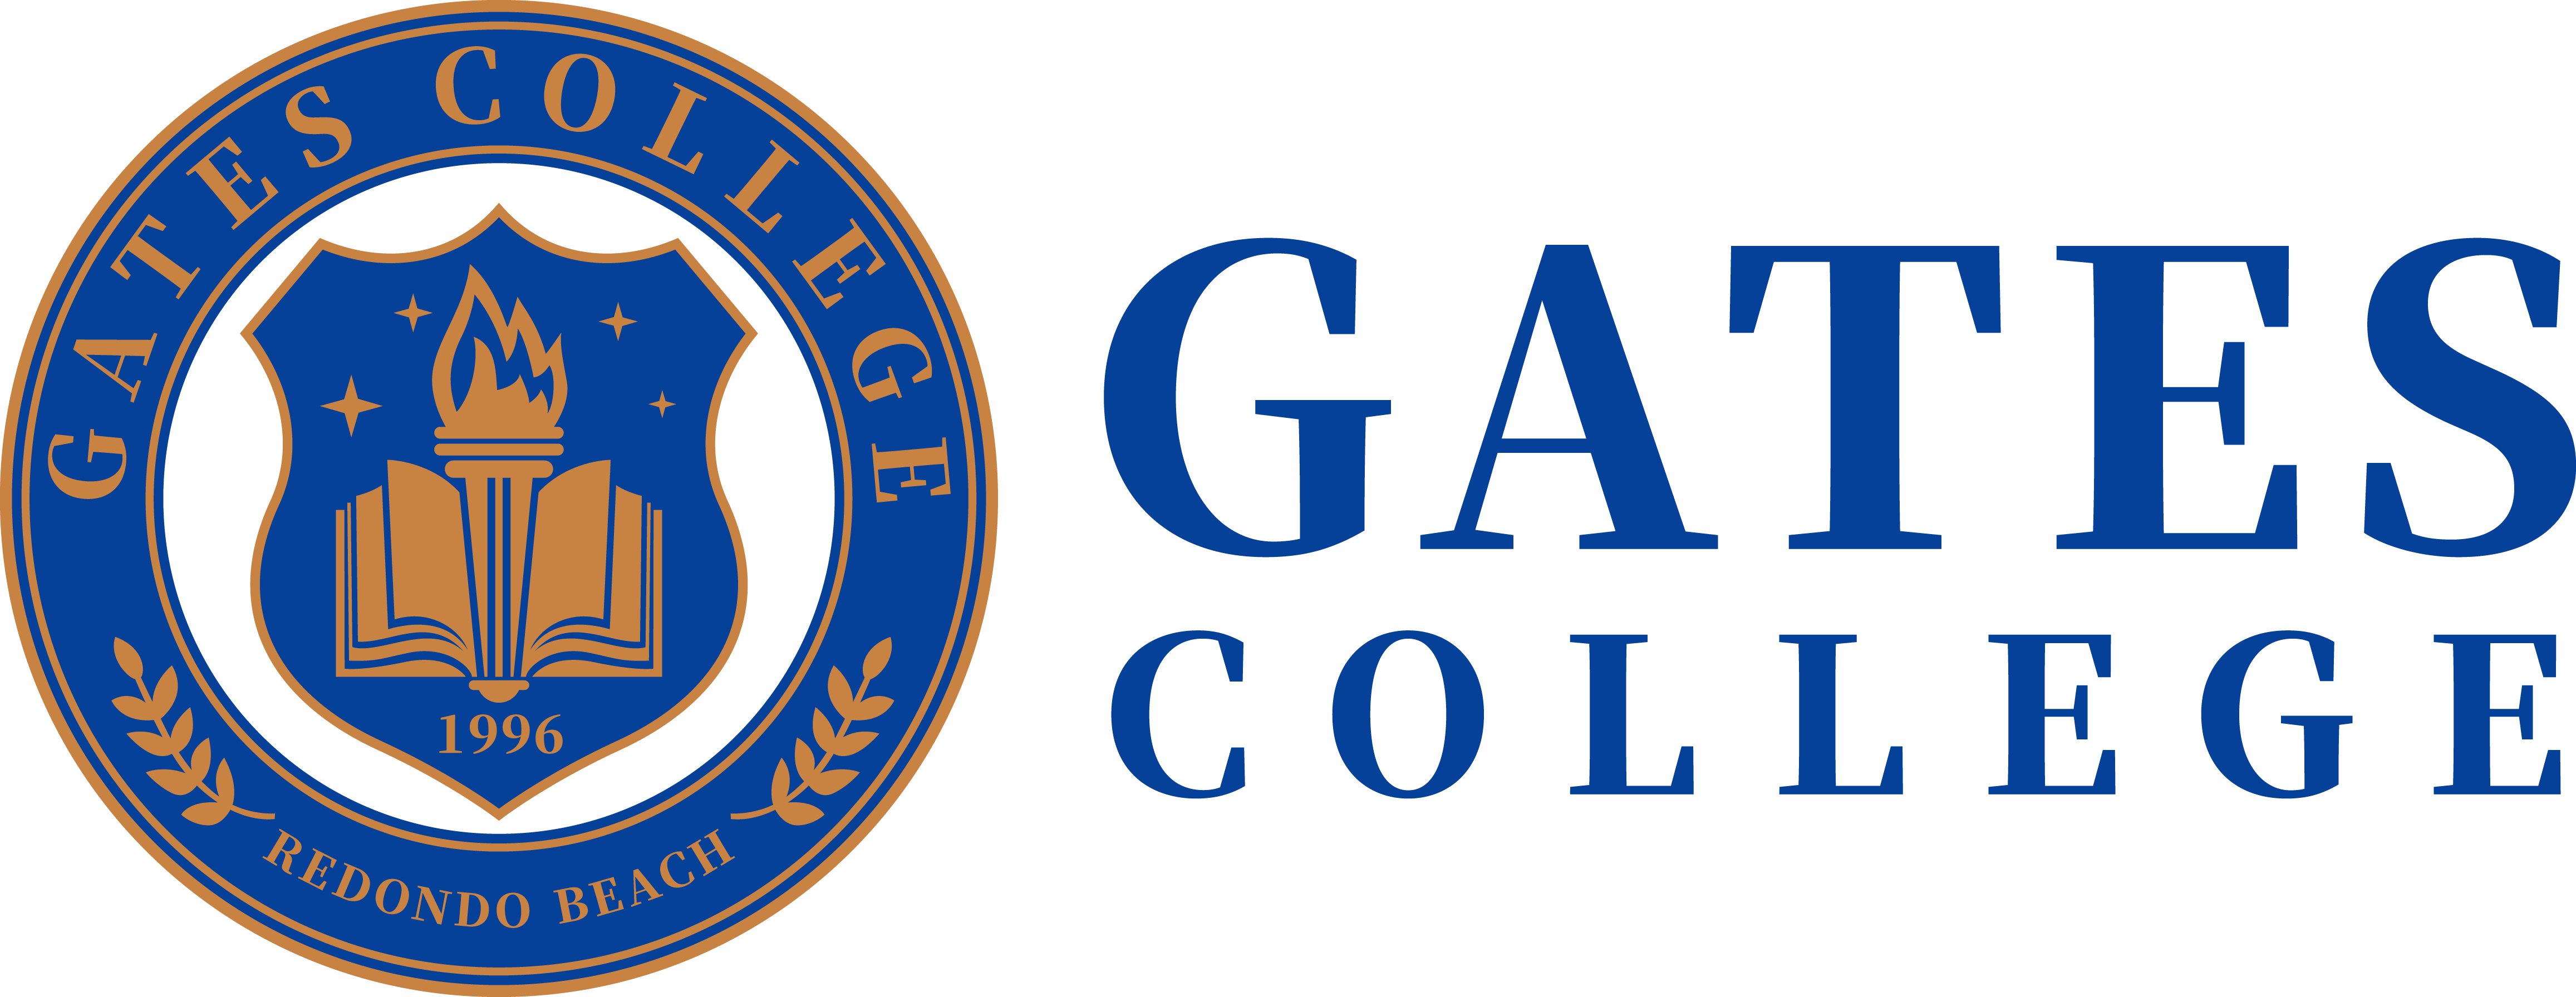 Gates College